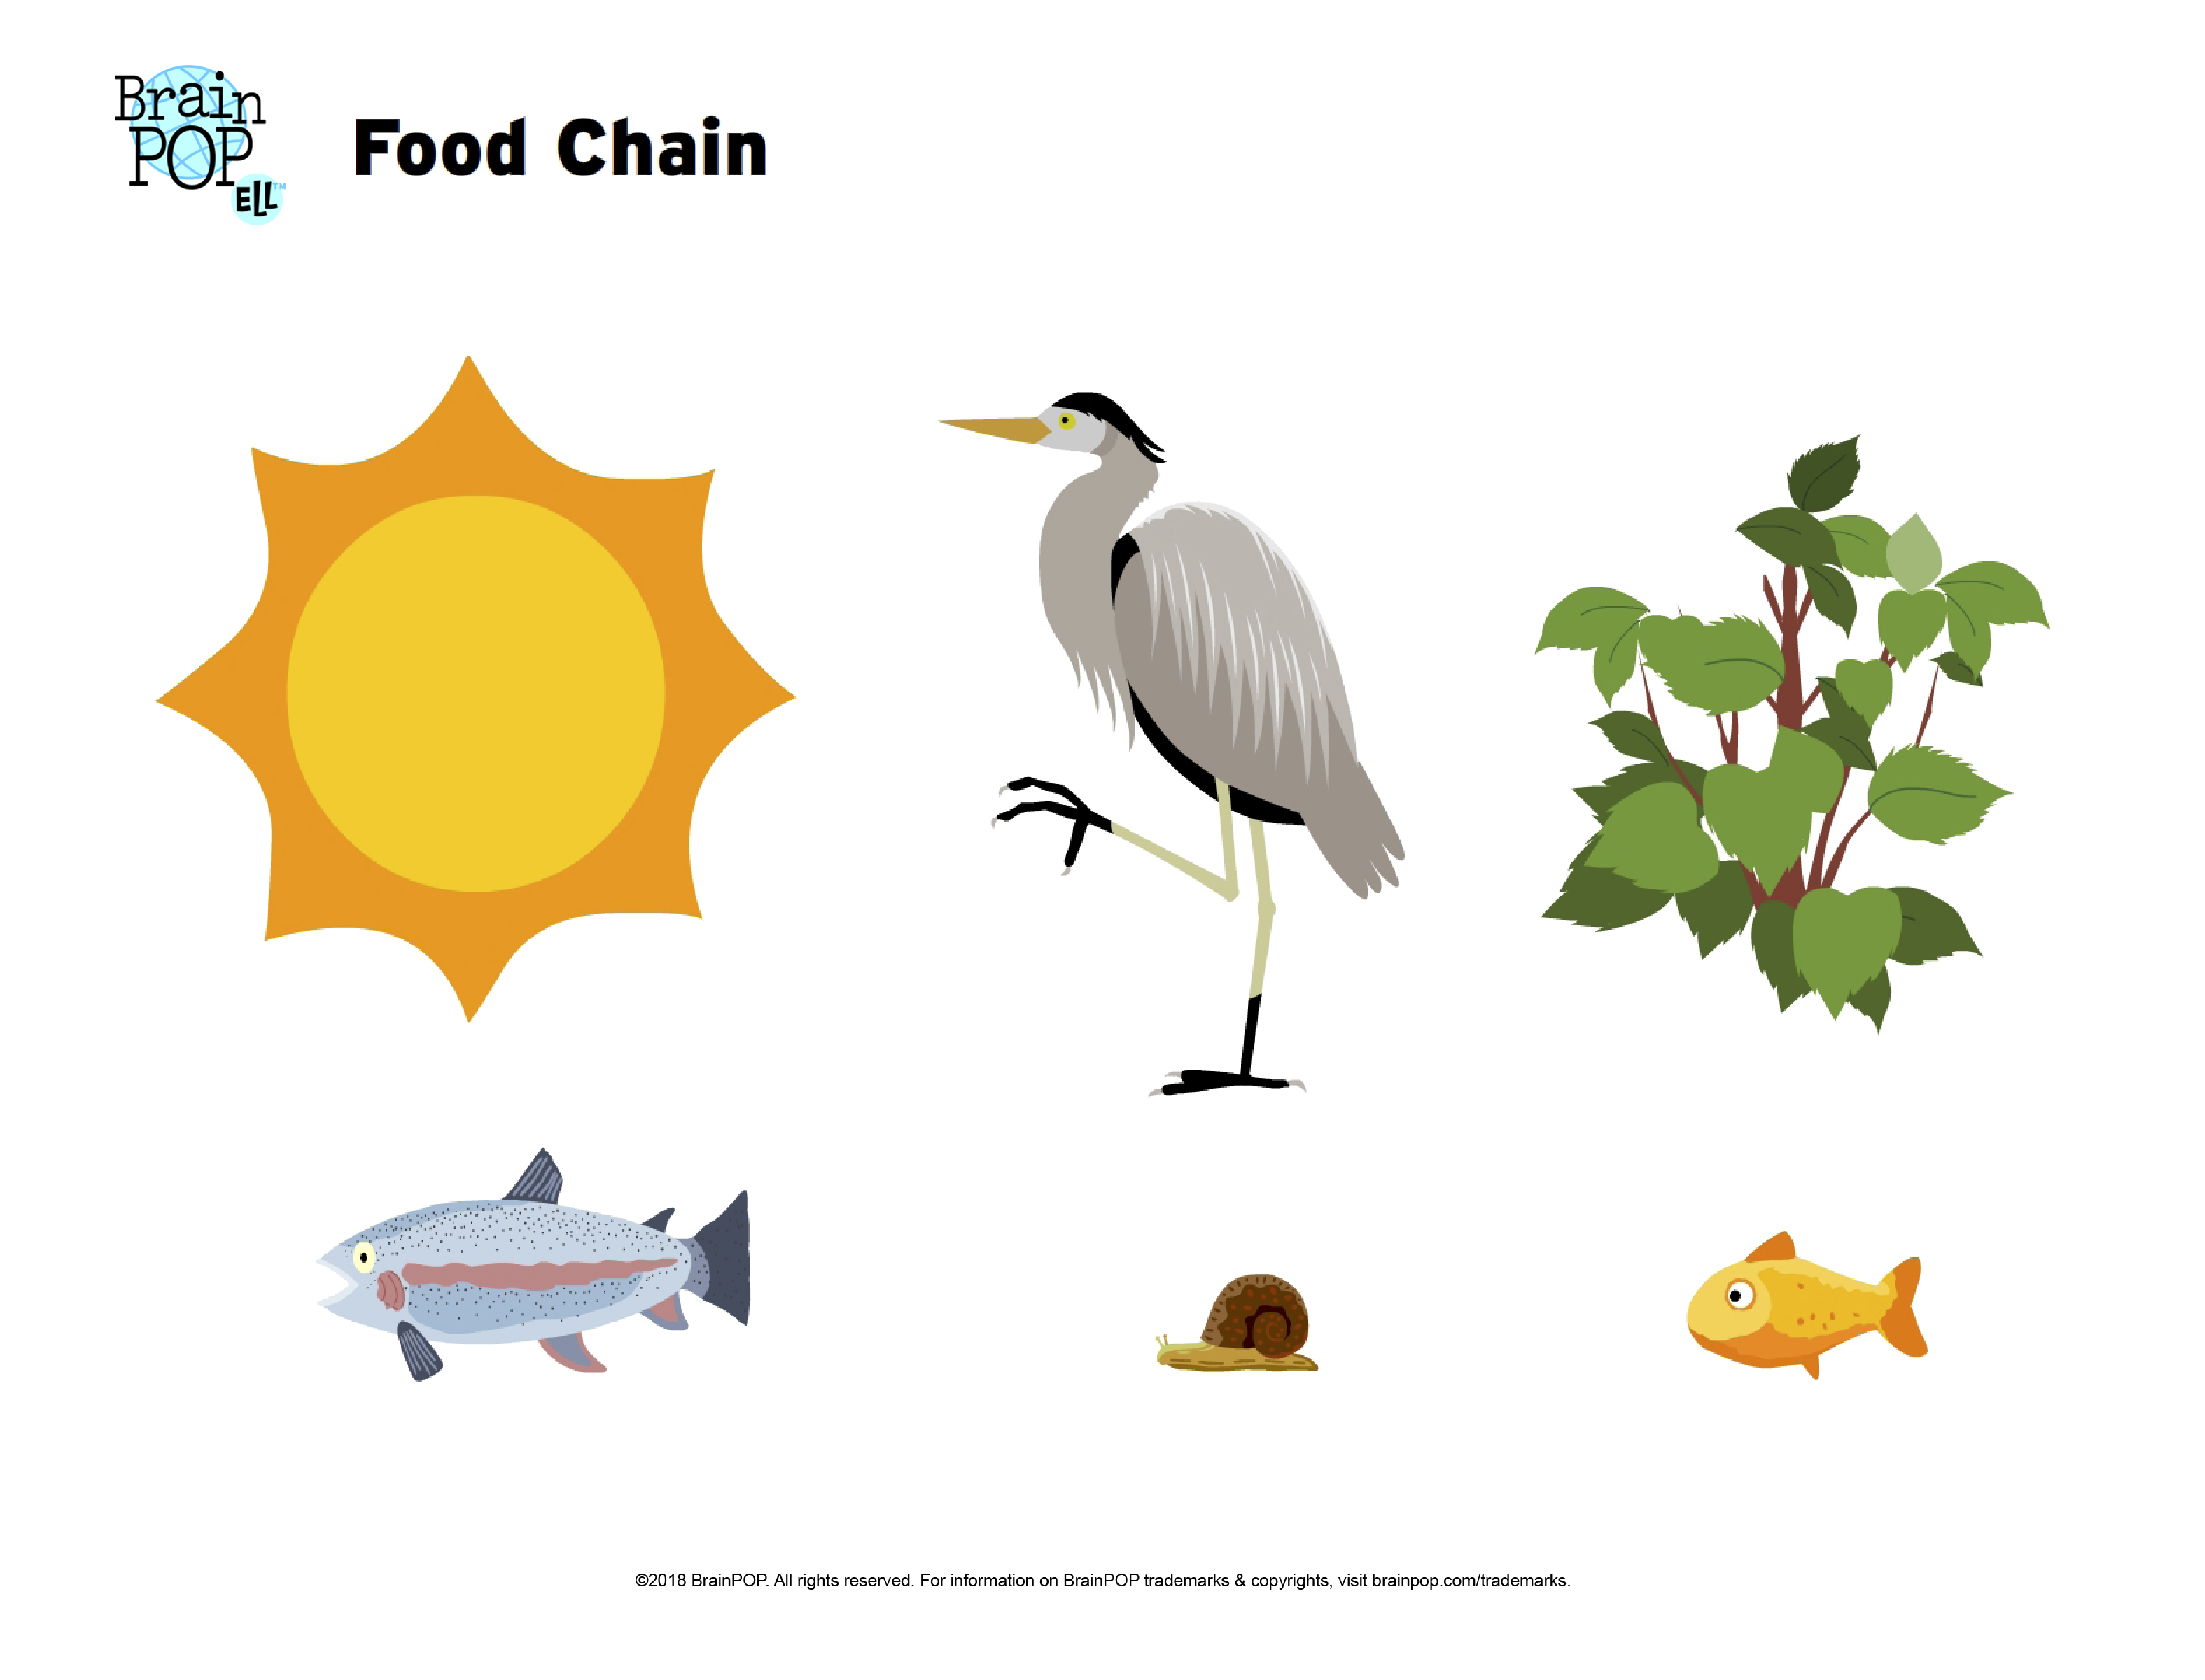 Food Chain Image